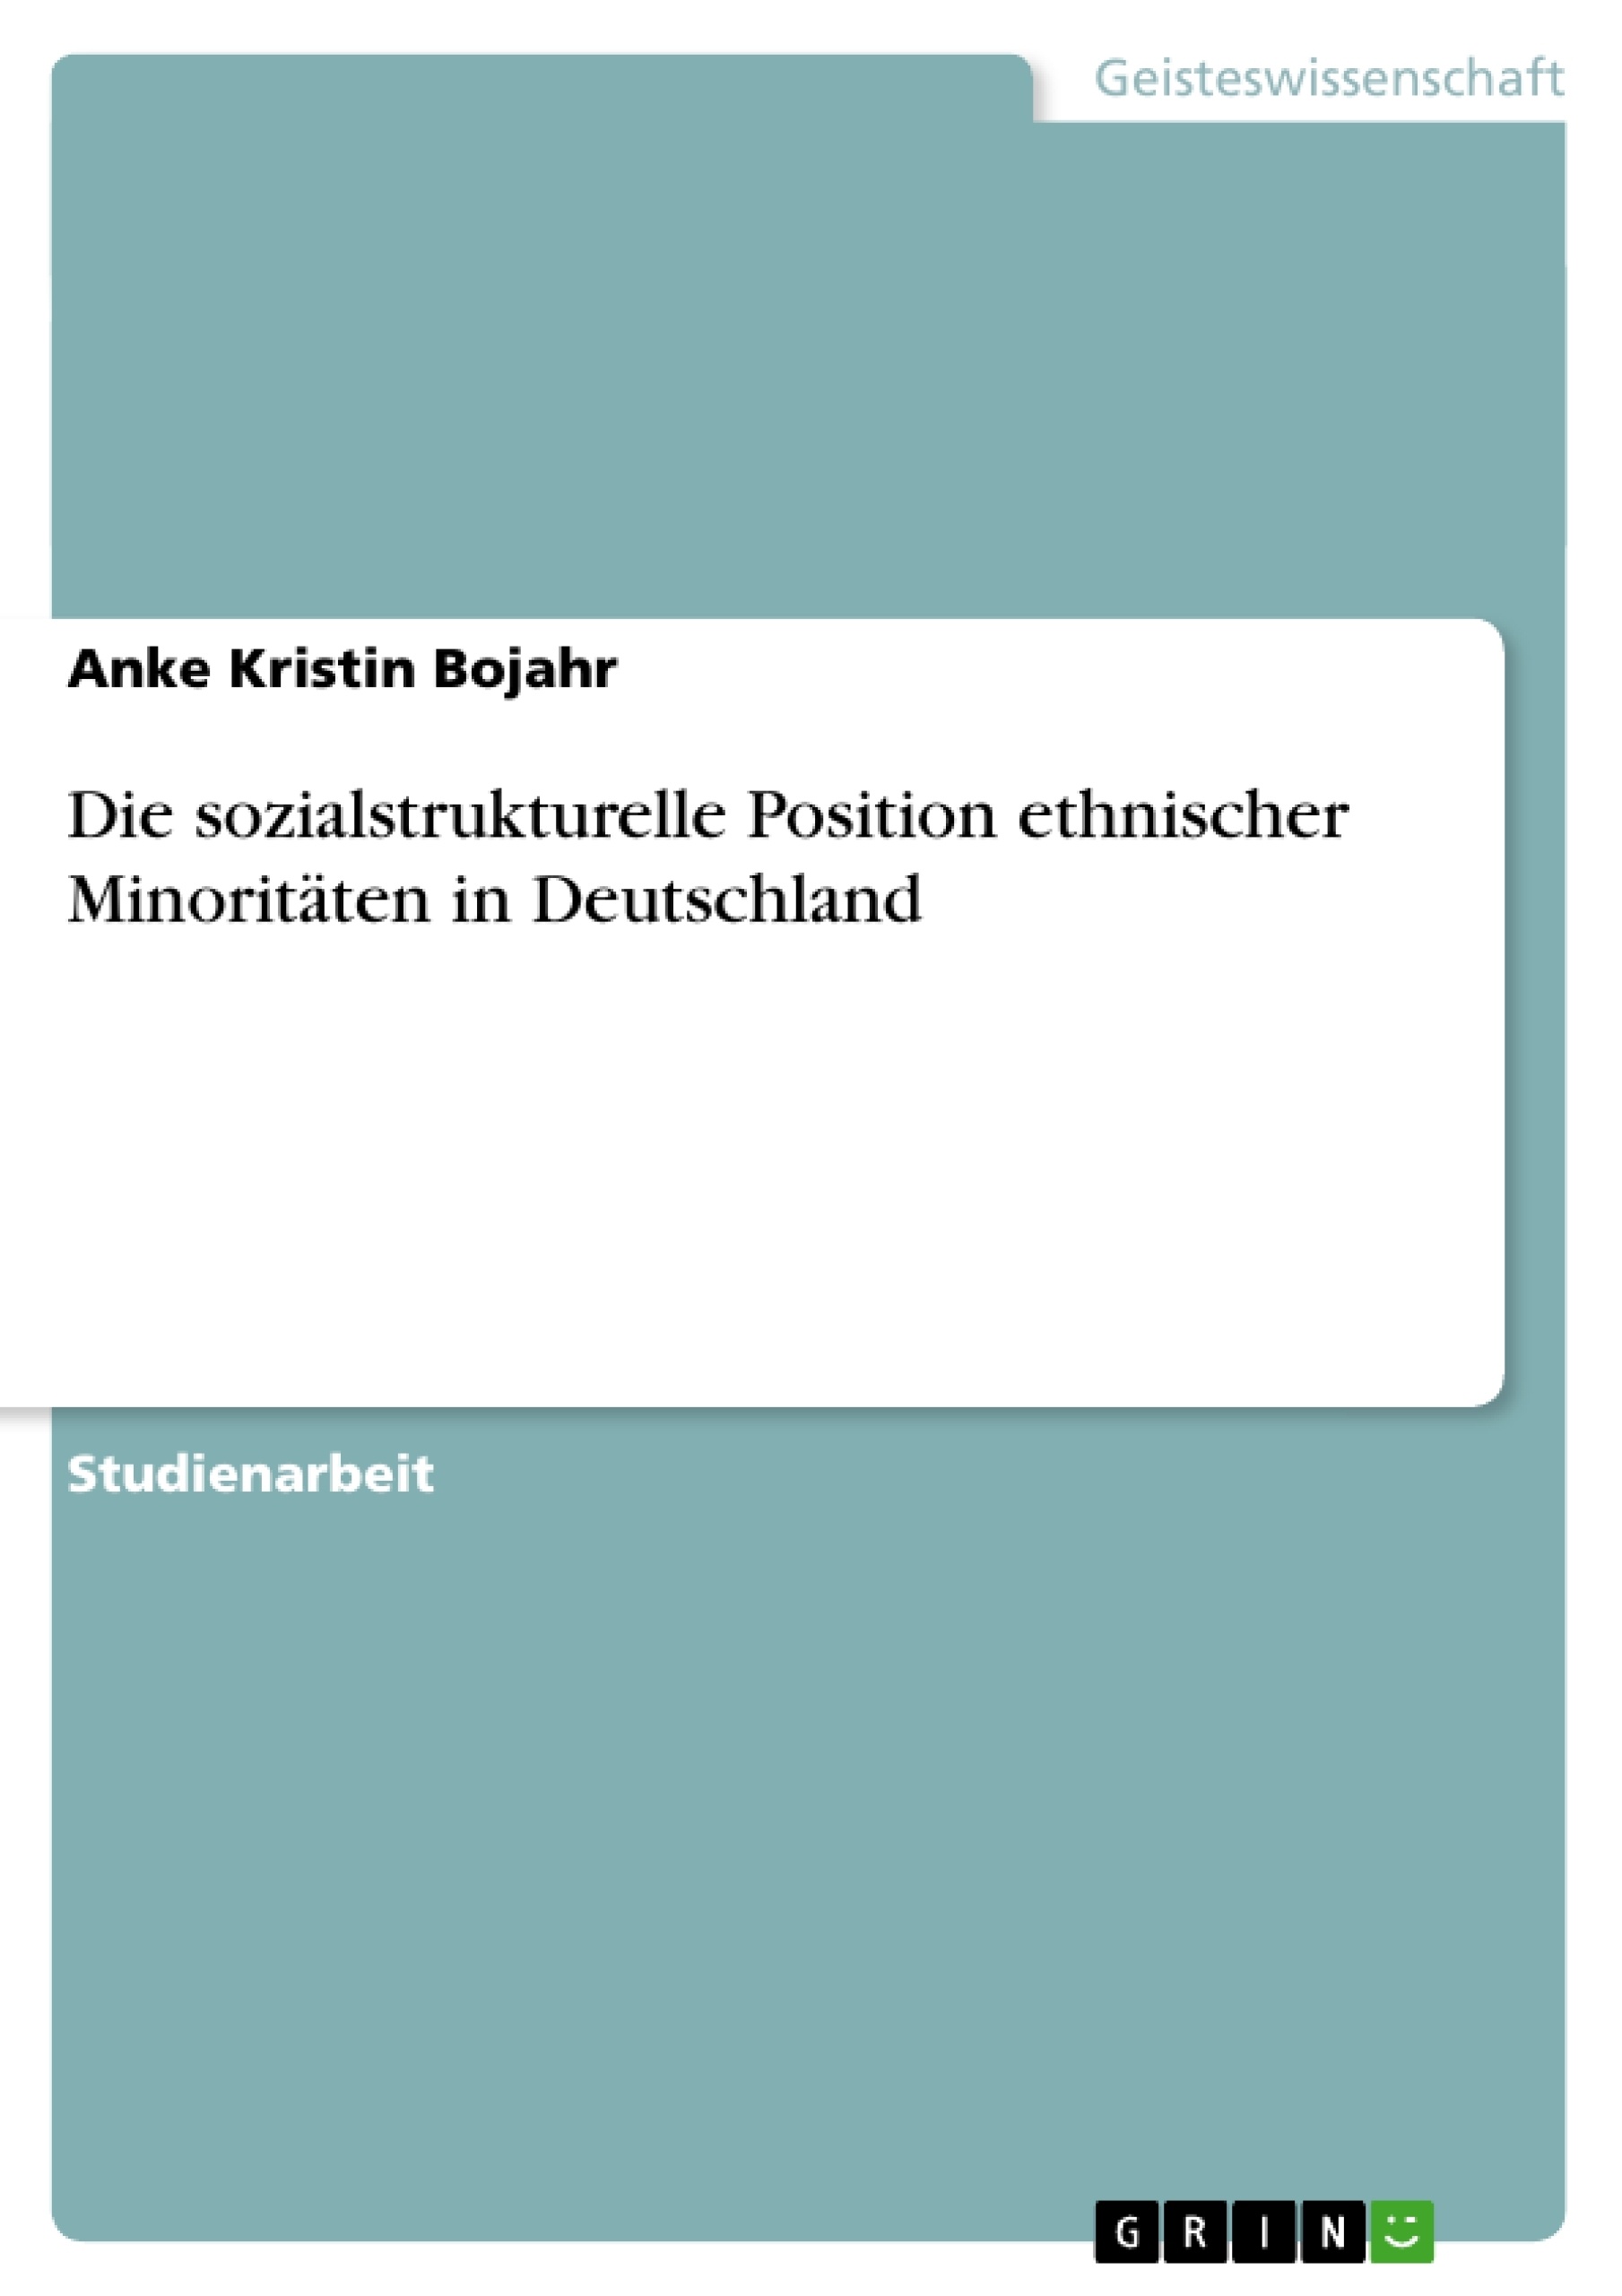 Title: Die sozialstrukturelle Position ethnischer Minoritäten in Deutschland